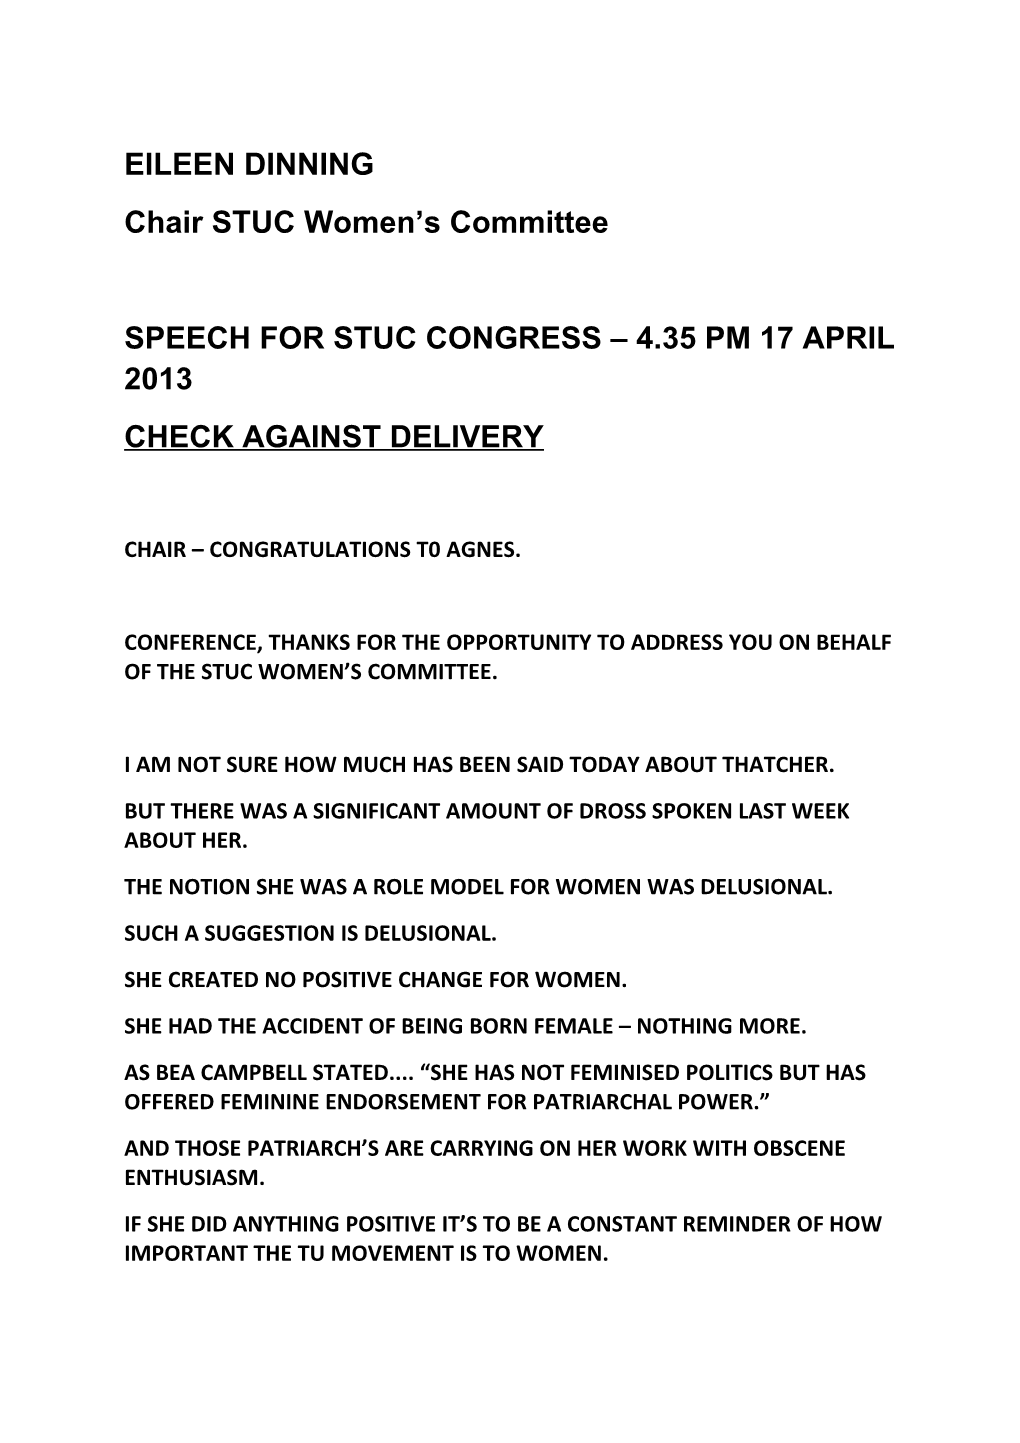 Speech for Stuc Congress 17 April 2013-04-12